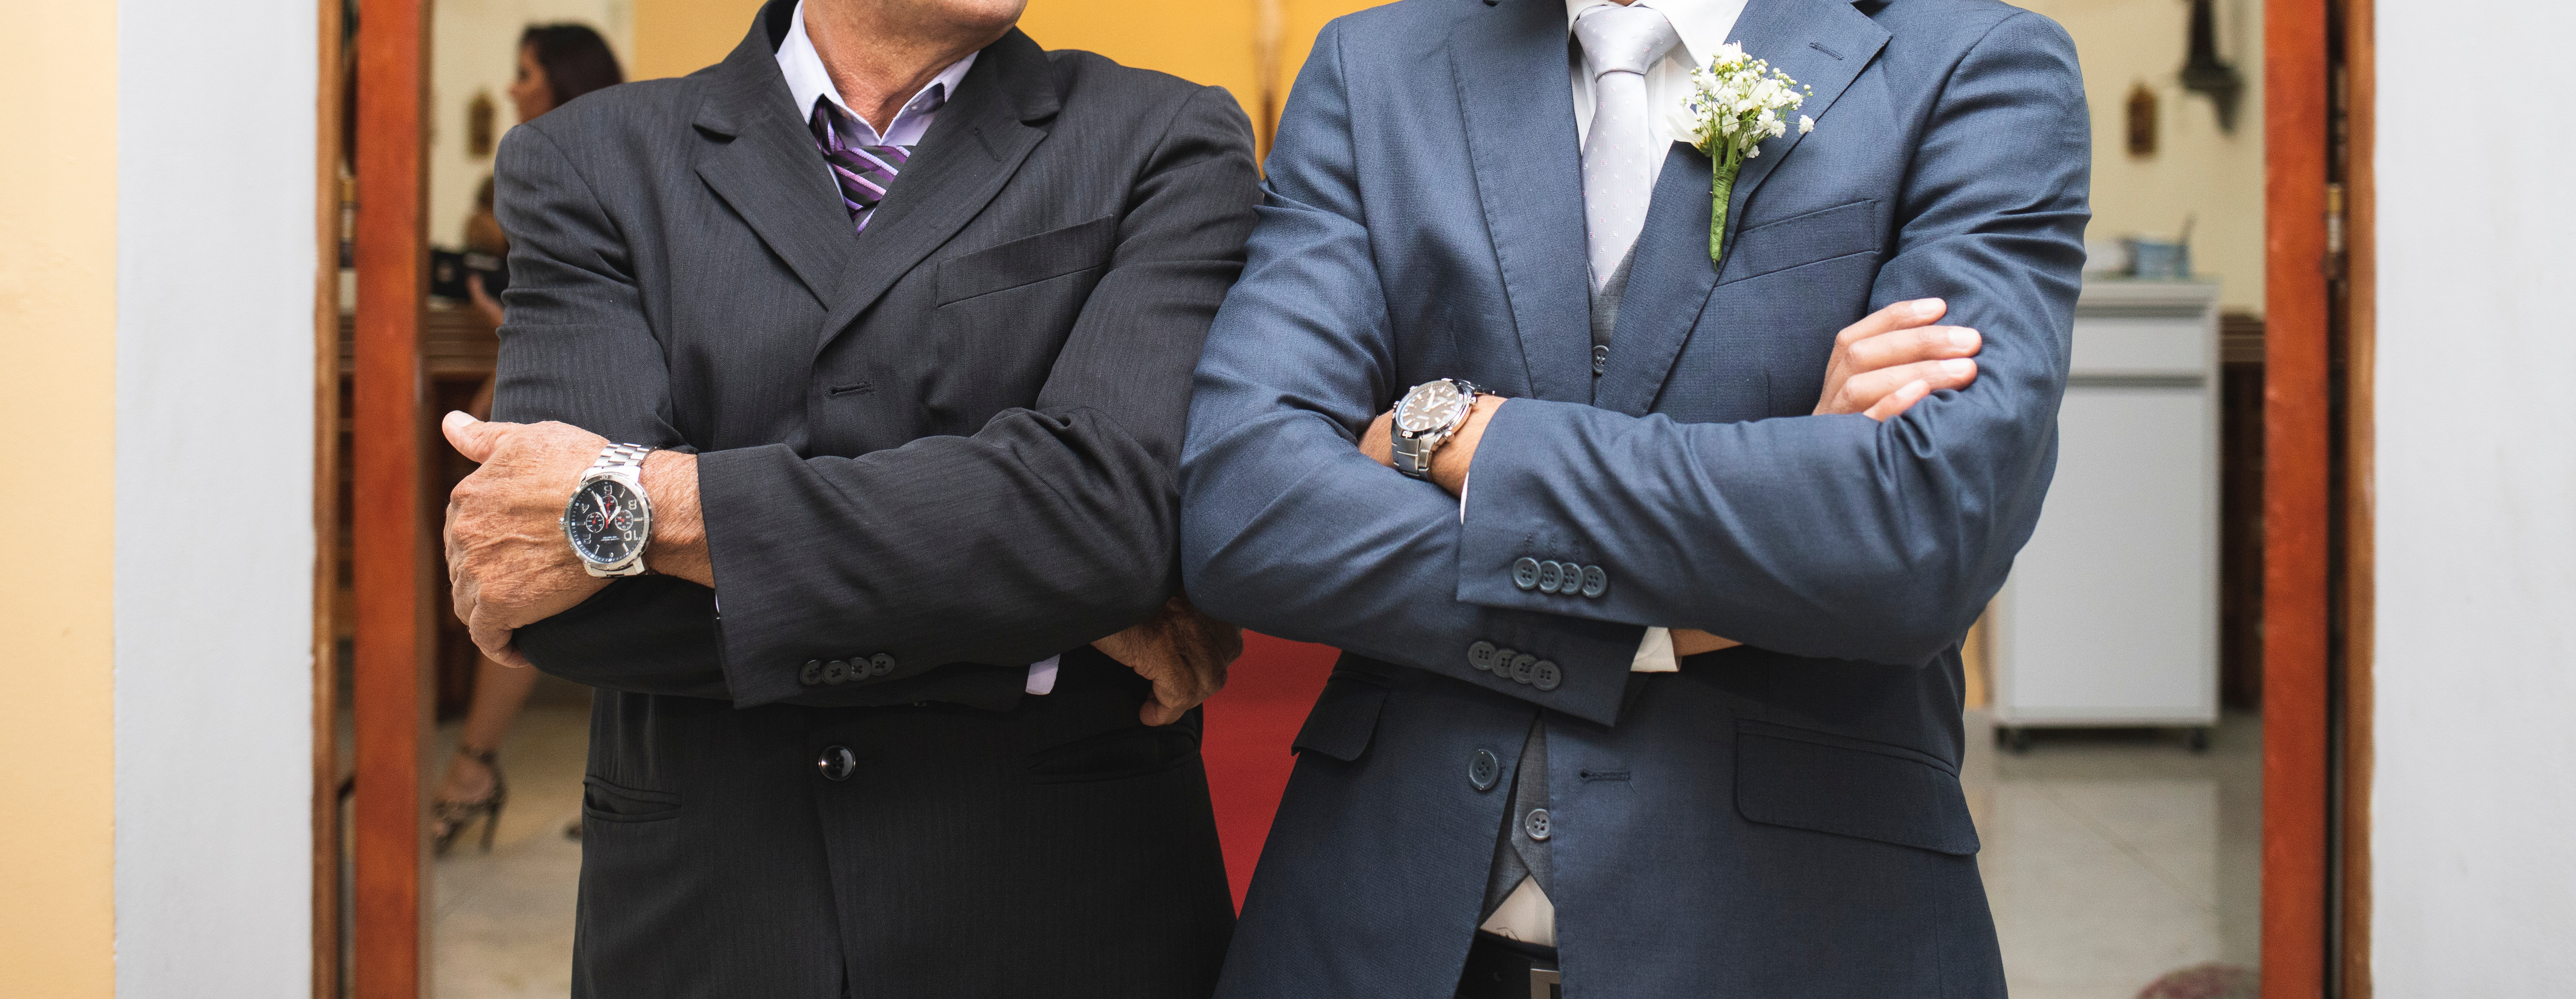 Un père et un marié à la porte de l'église | Source : Shutterstock